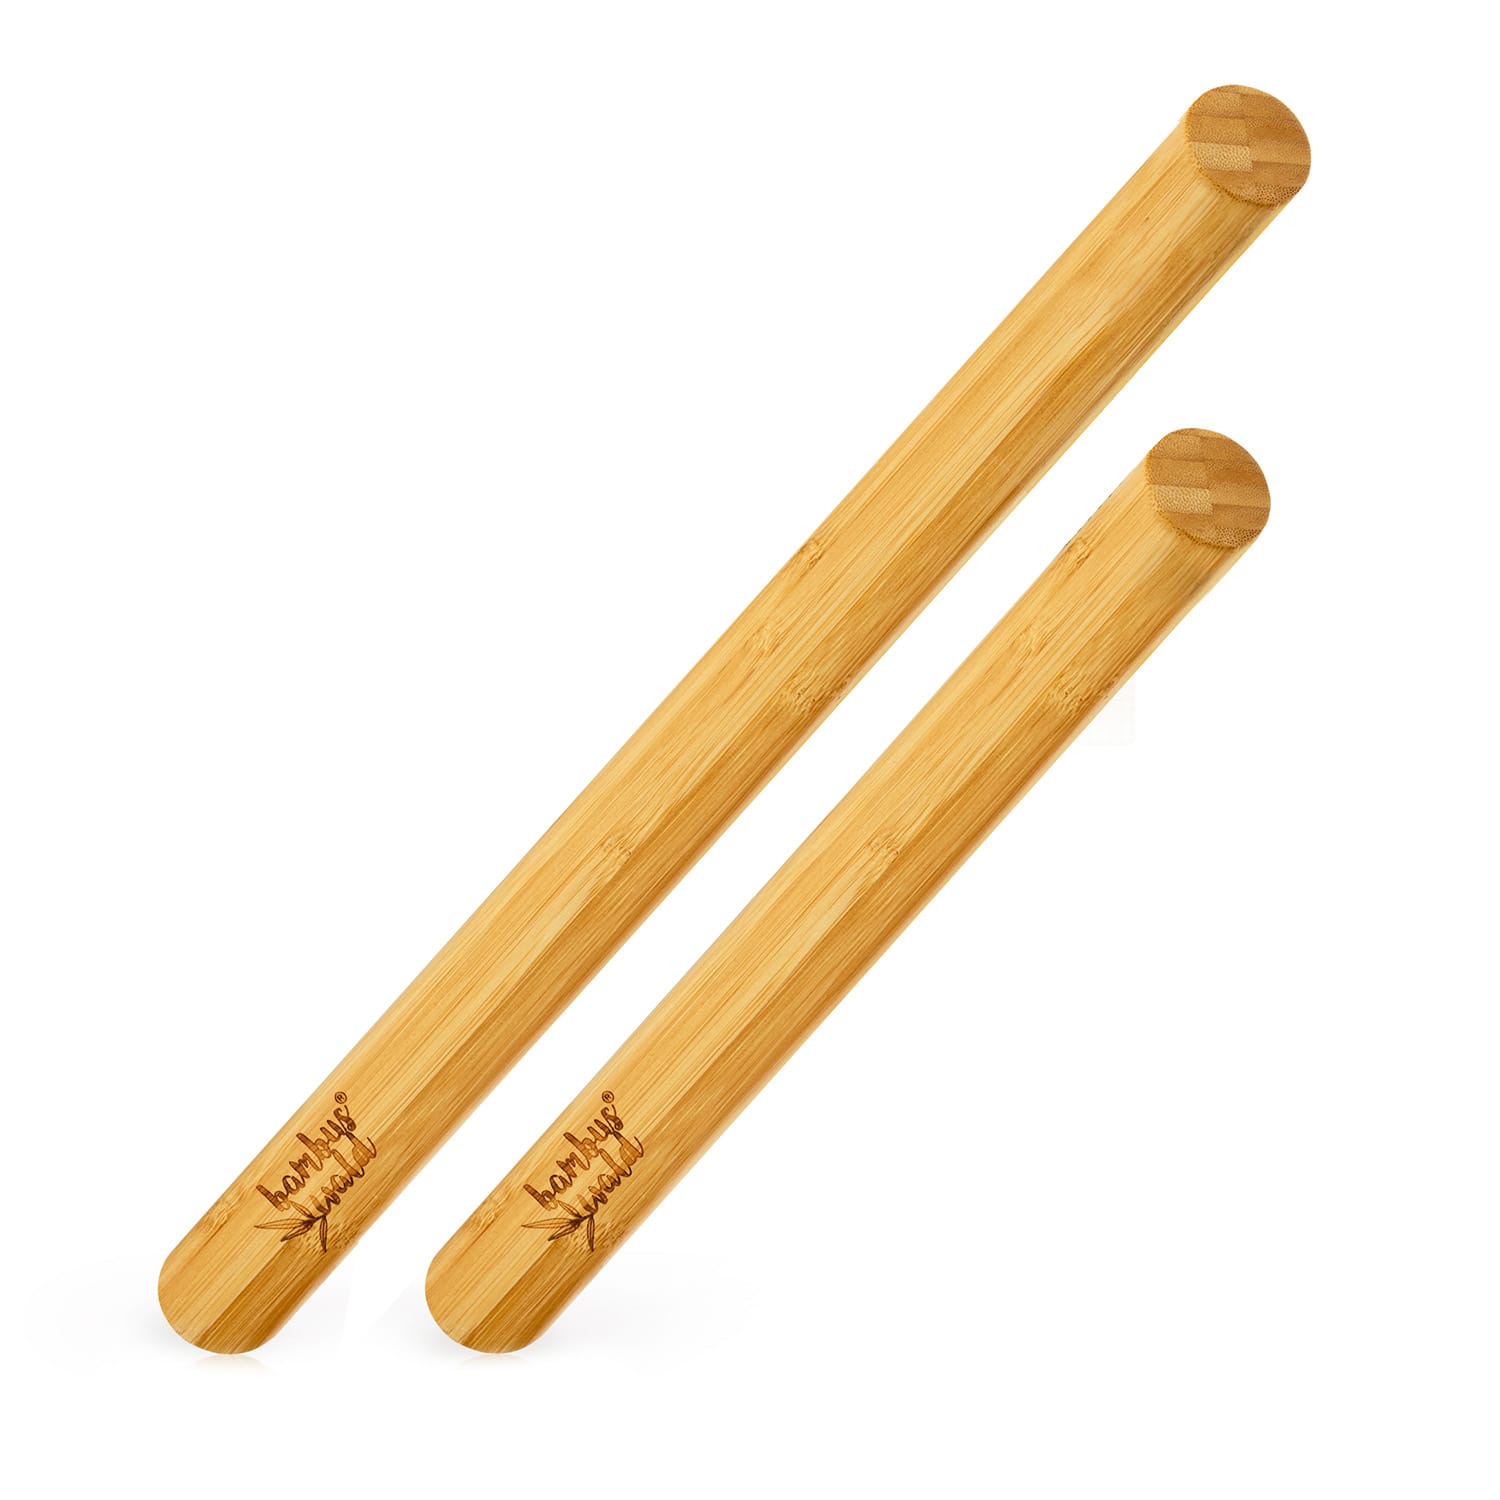 Levně Klarstein Váleček na těsto, sada 2 kusů, 100% bambus, 30/40 x 3,3 cm (D x O), hladký povrch